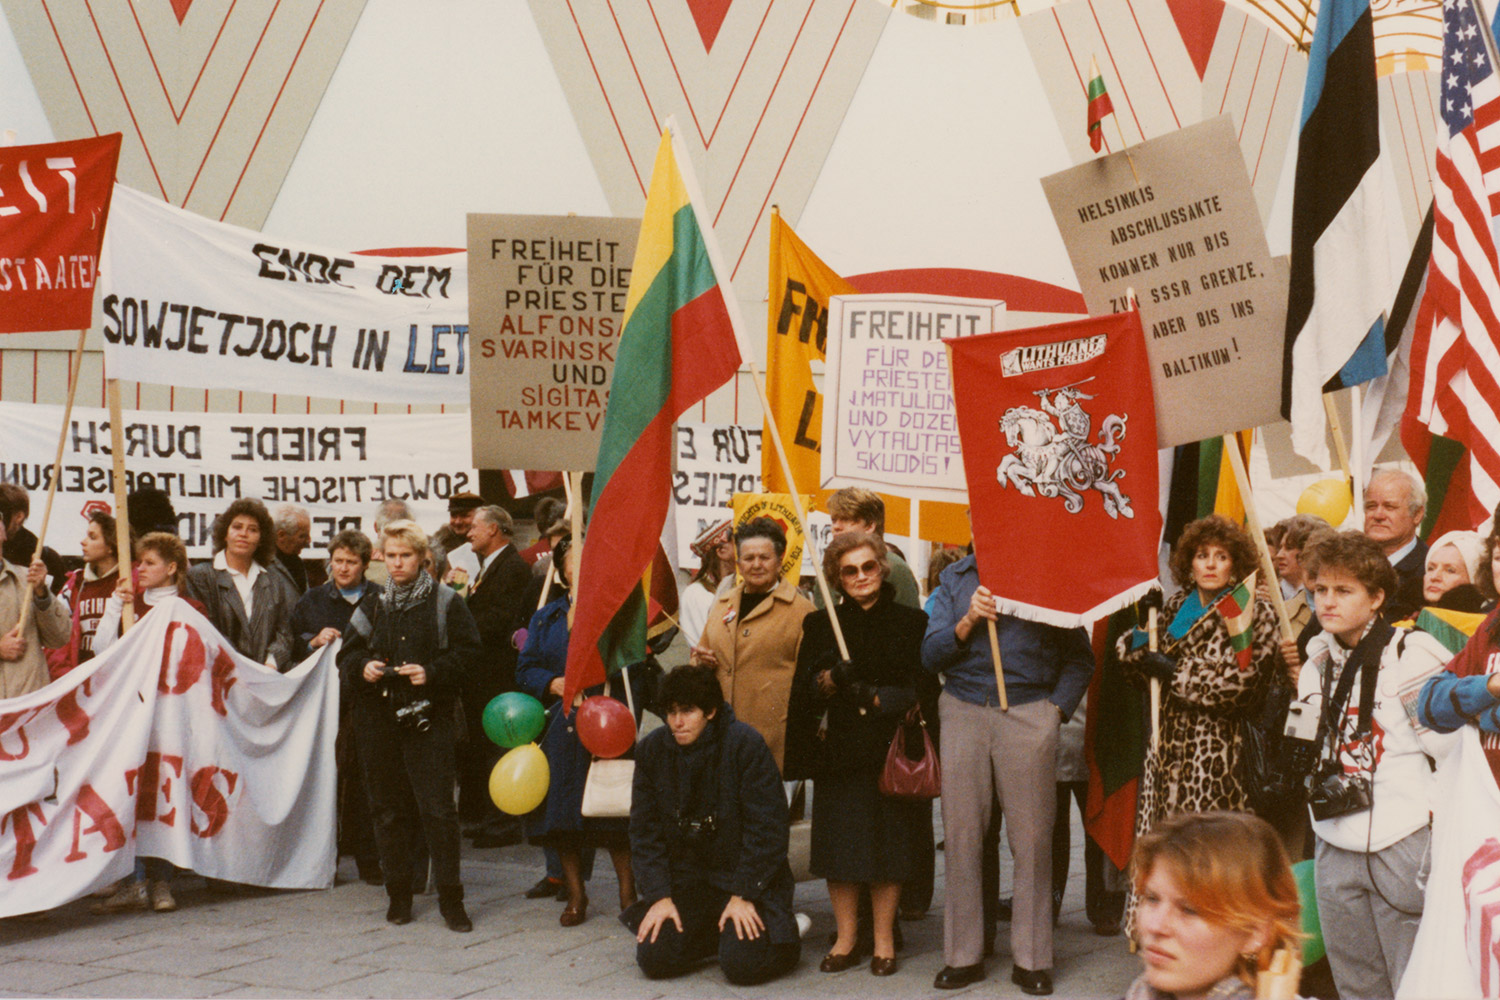 1986 m. Viena, Austrija. Baltijos valstybių atstovų laisvės akcija, prasidedant Europos saugumo ir bendradarbiavimo organizacijos (ESBO) Vienos konferencijai. LCVA